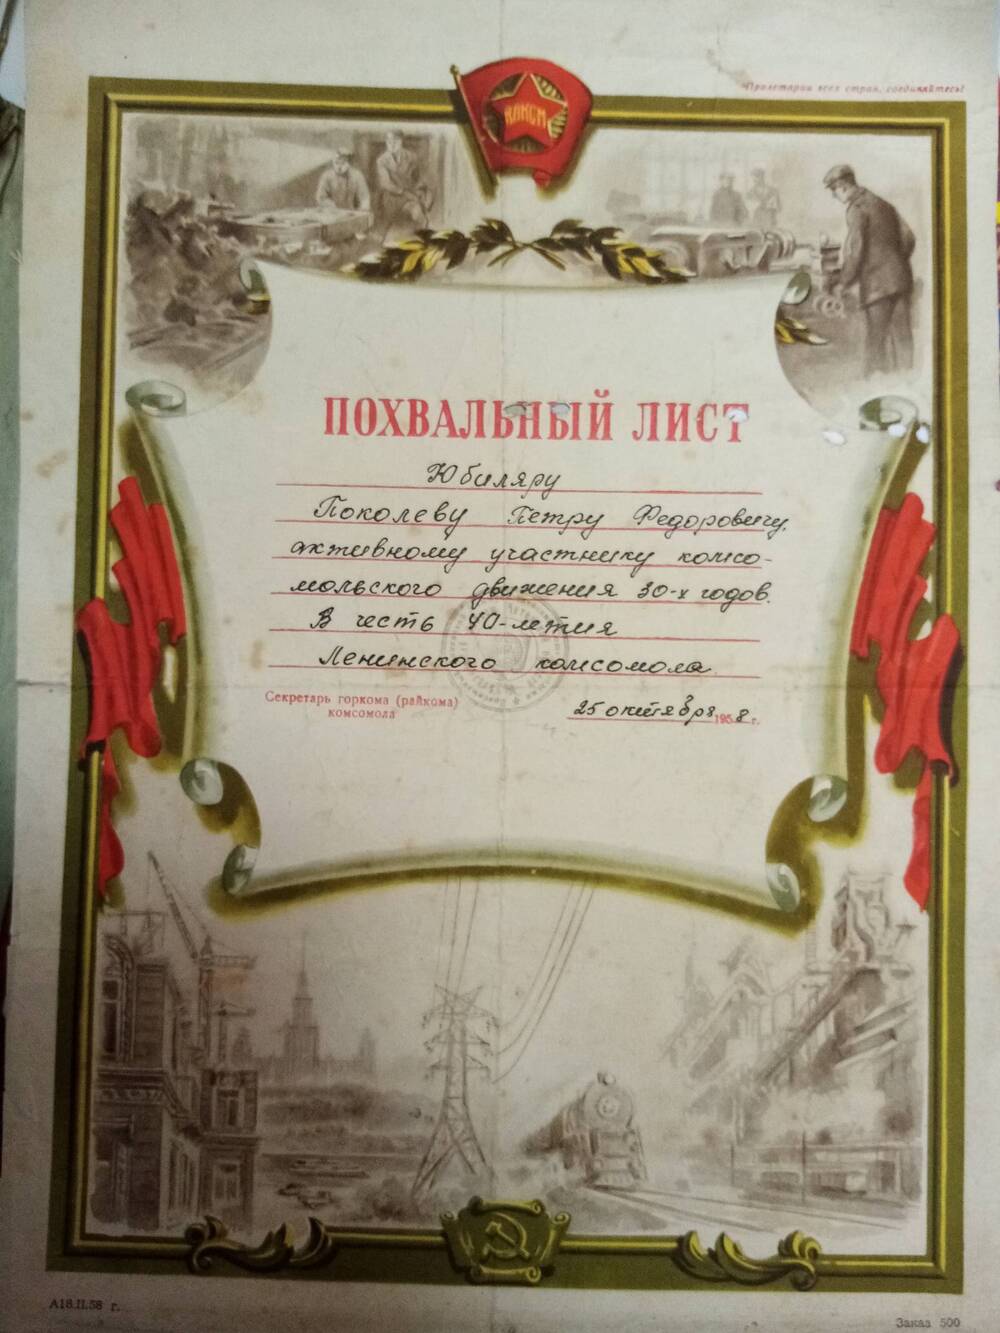 Похвальный лист Поколеву Петру Федоровичу